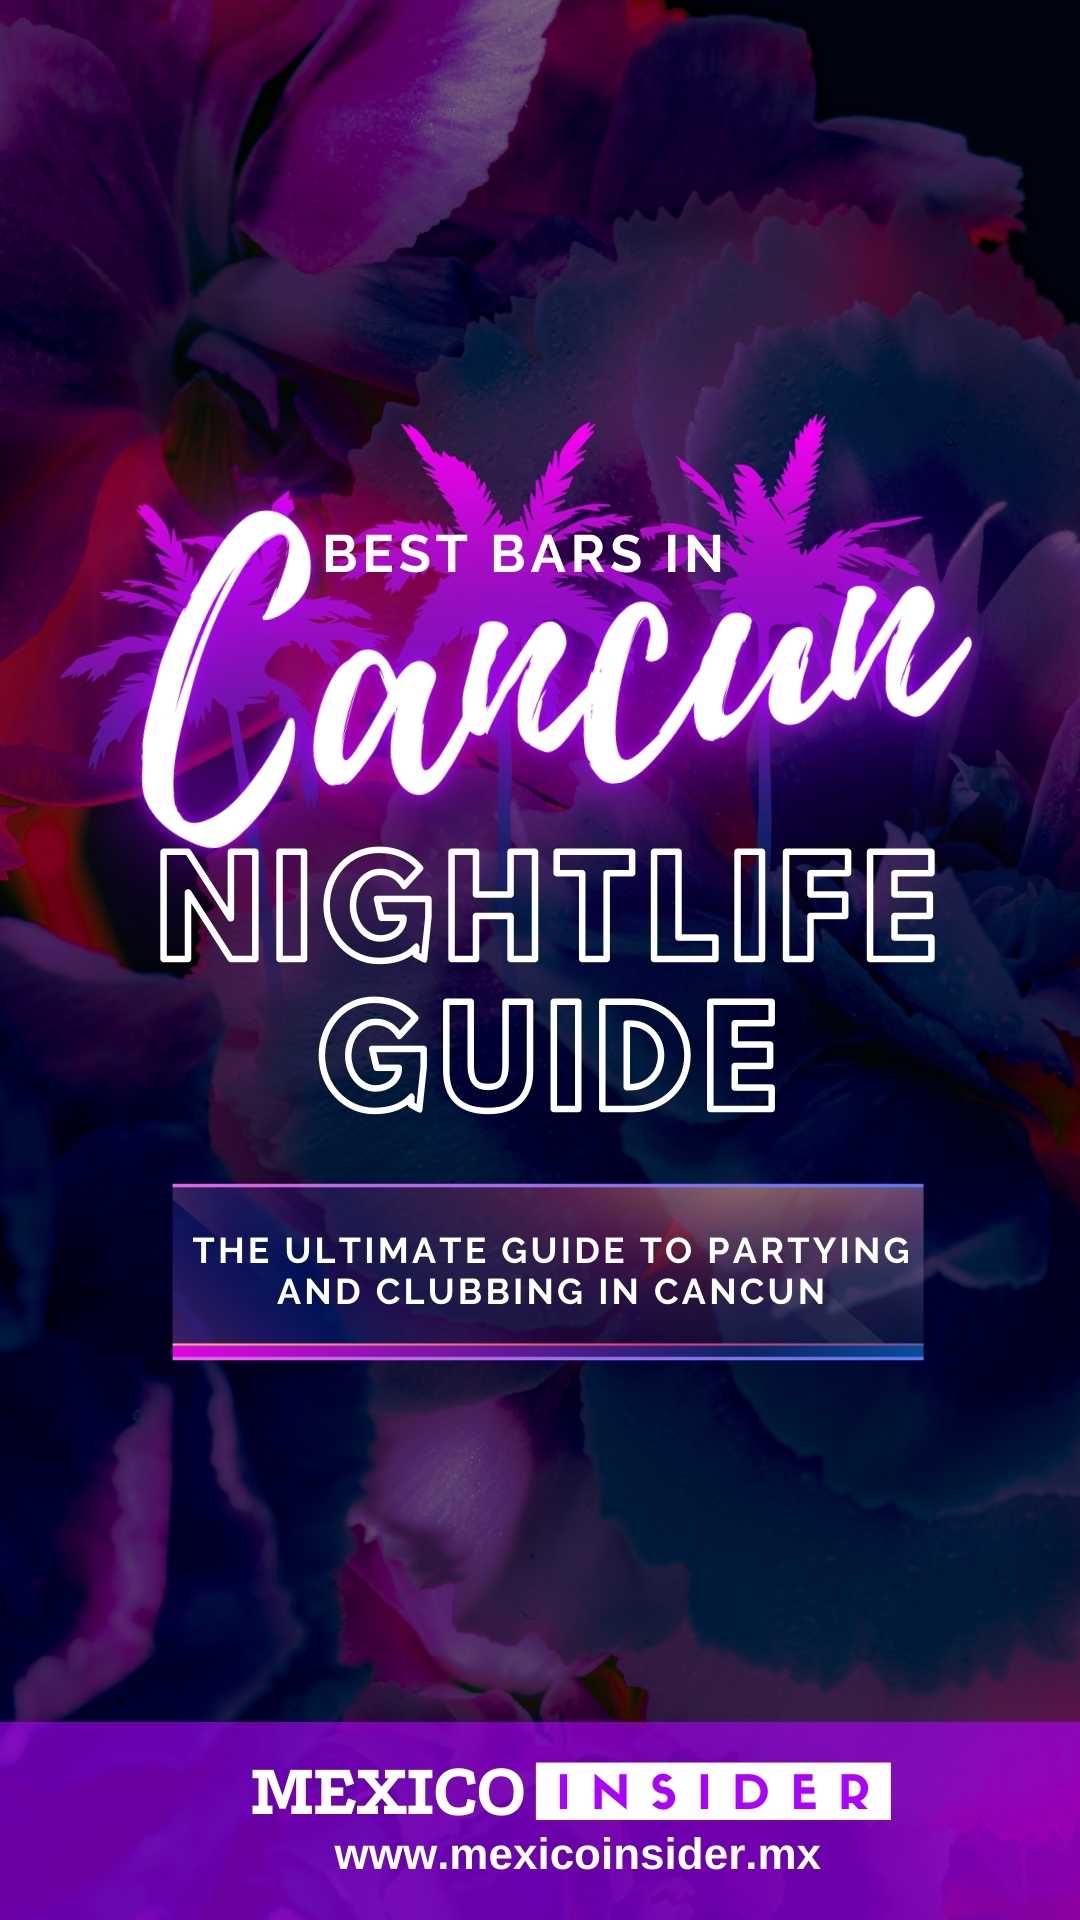 cancun nightlife